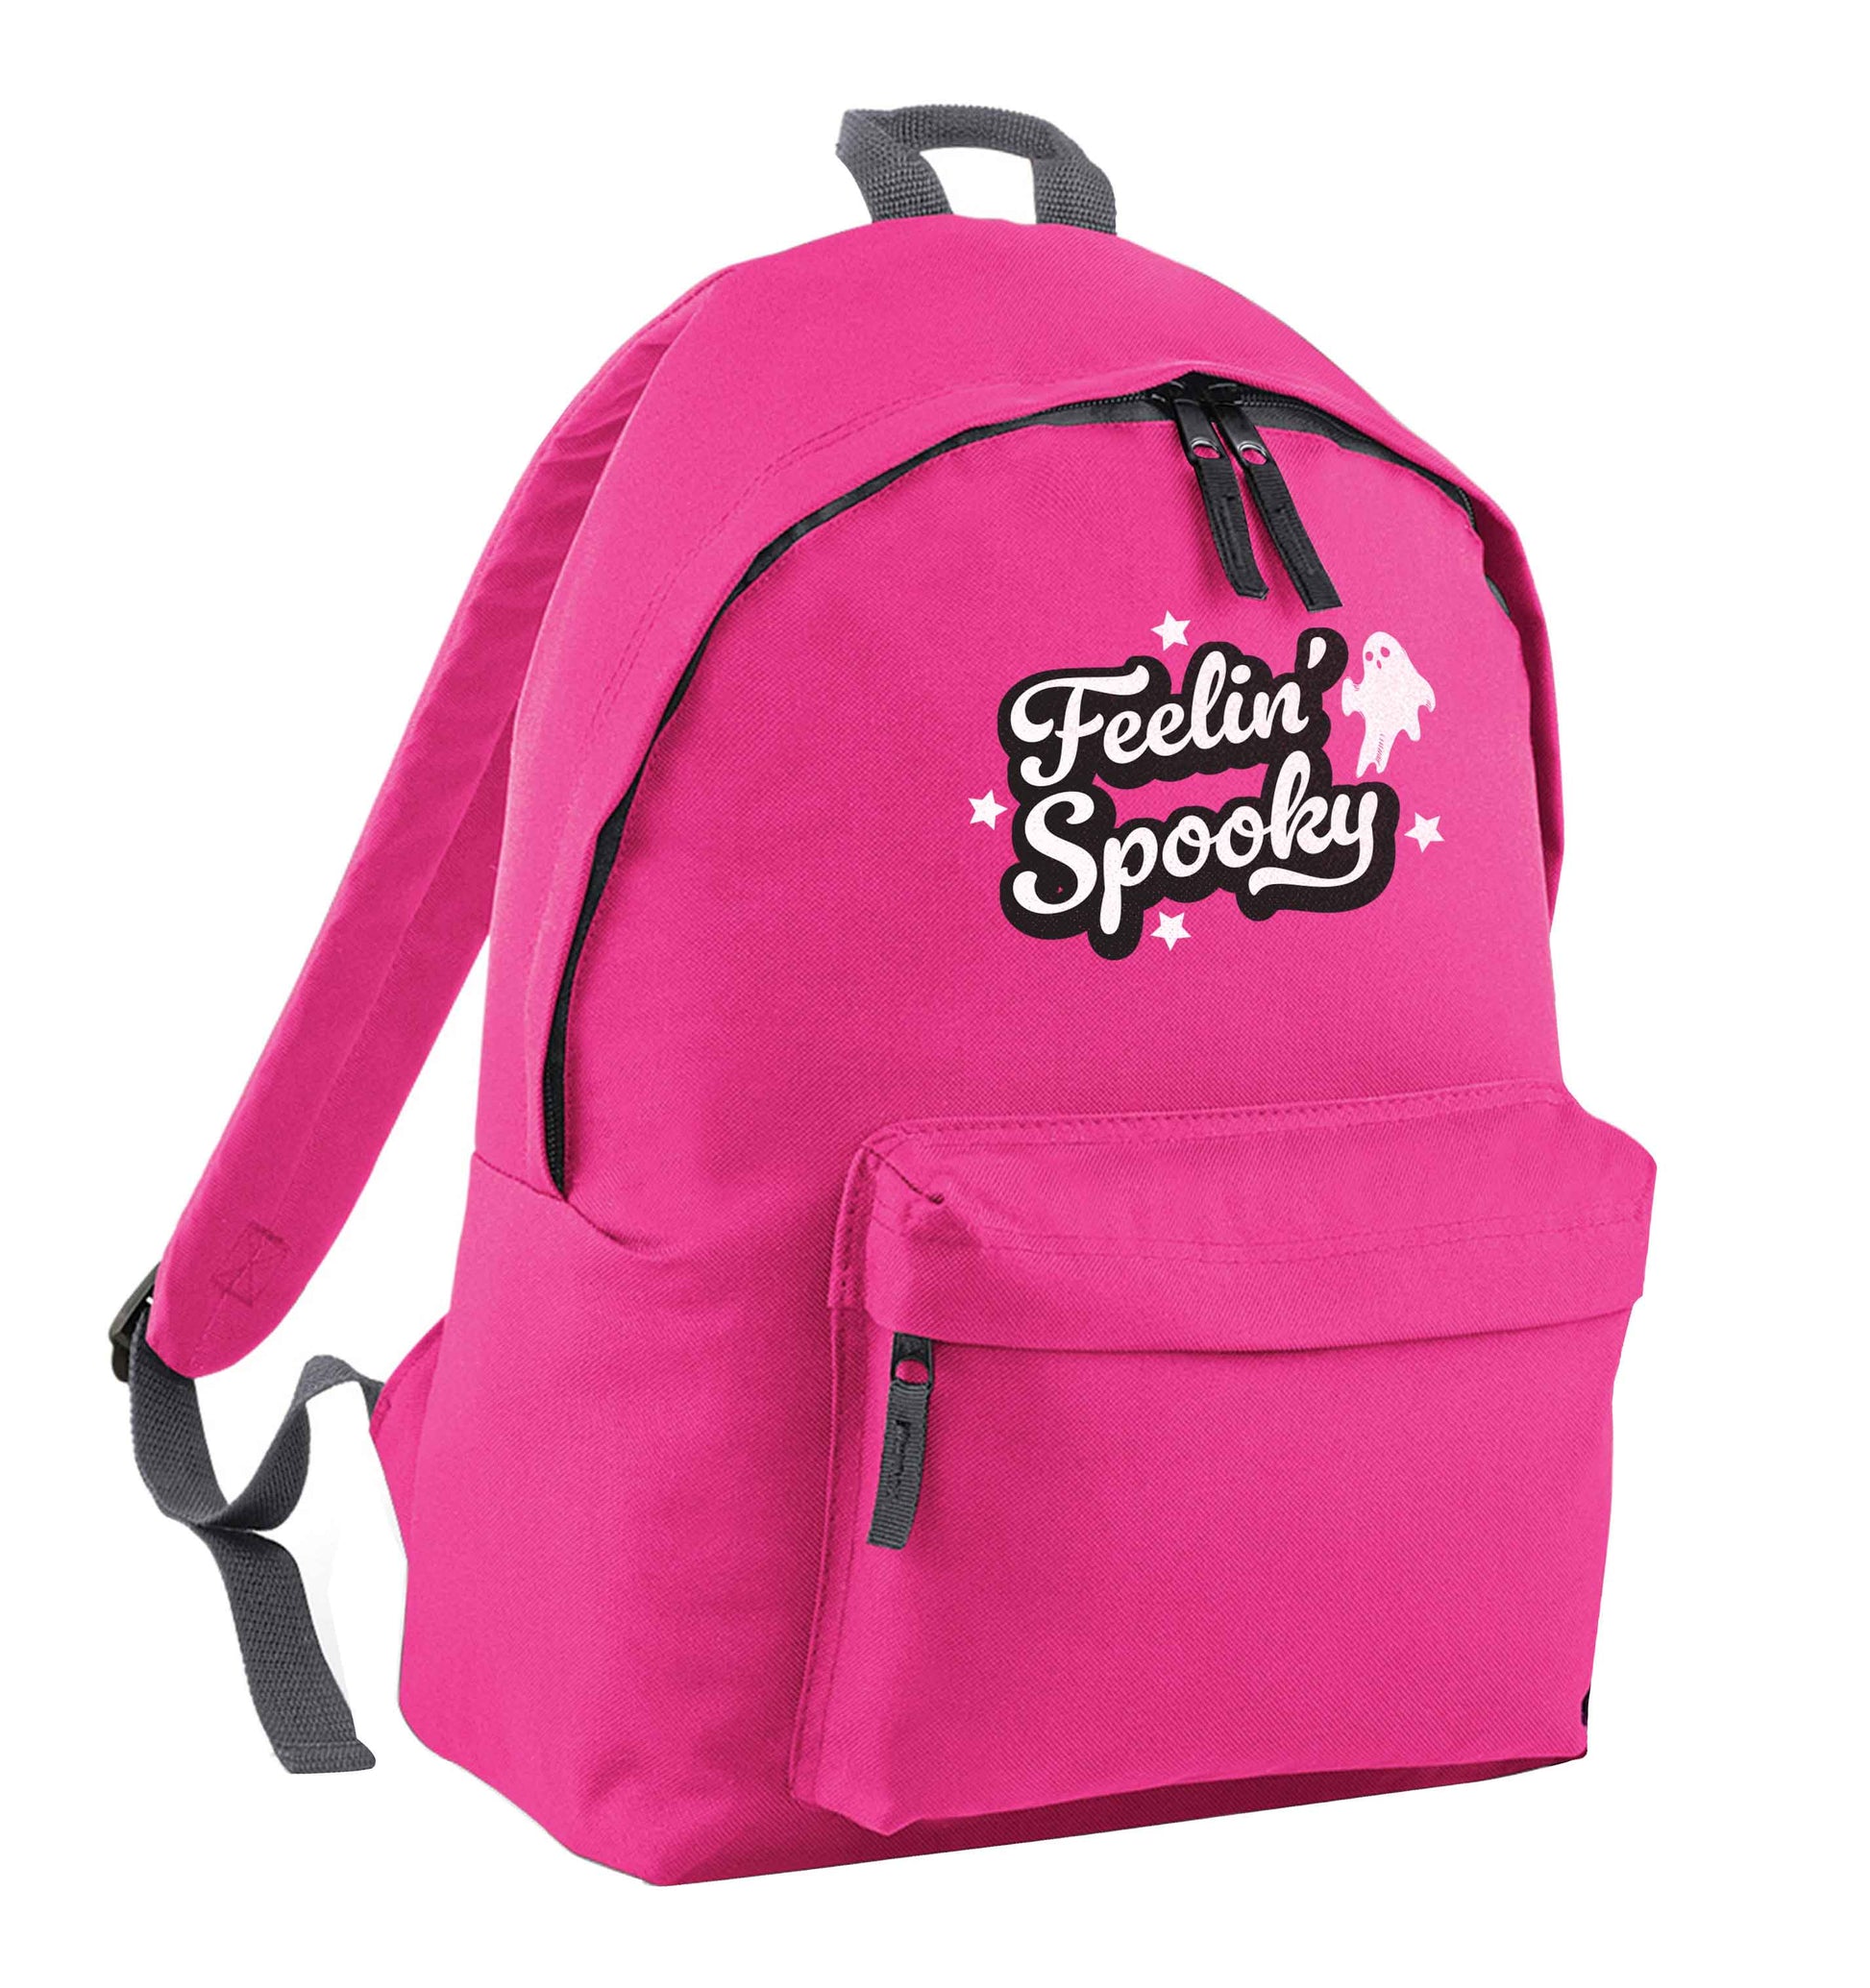 Feelin' Spooky Kit pink adults backpack